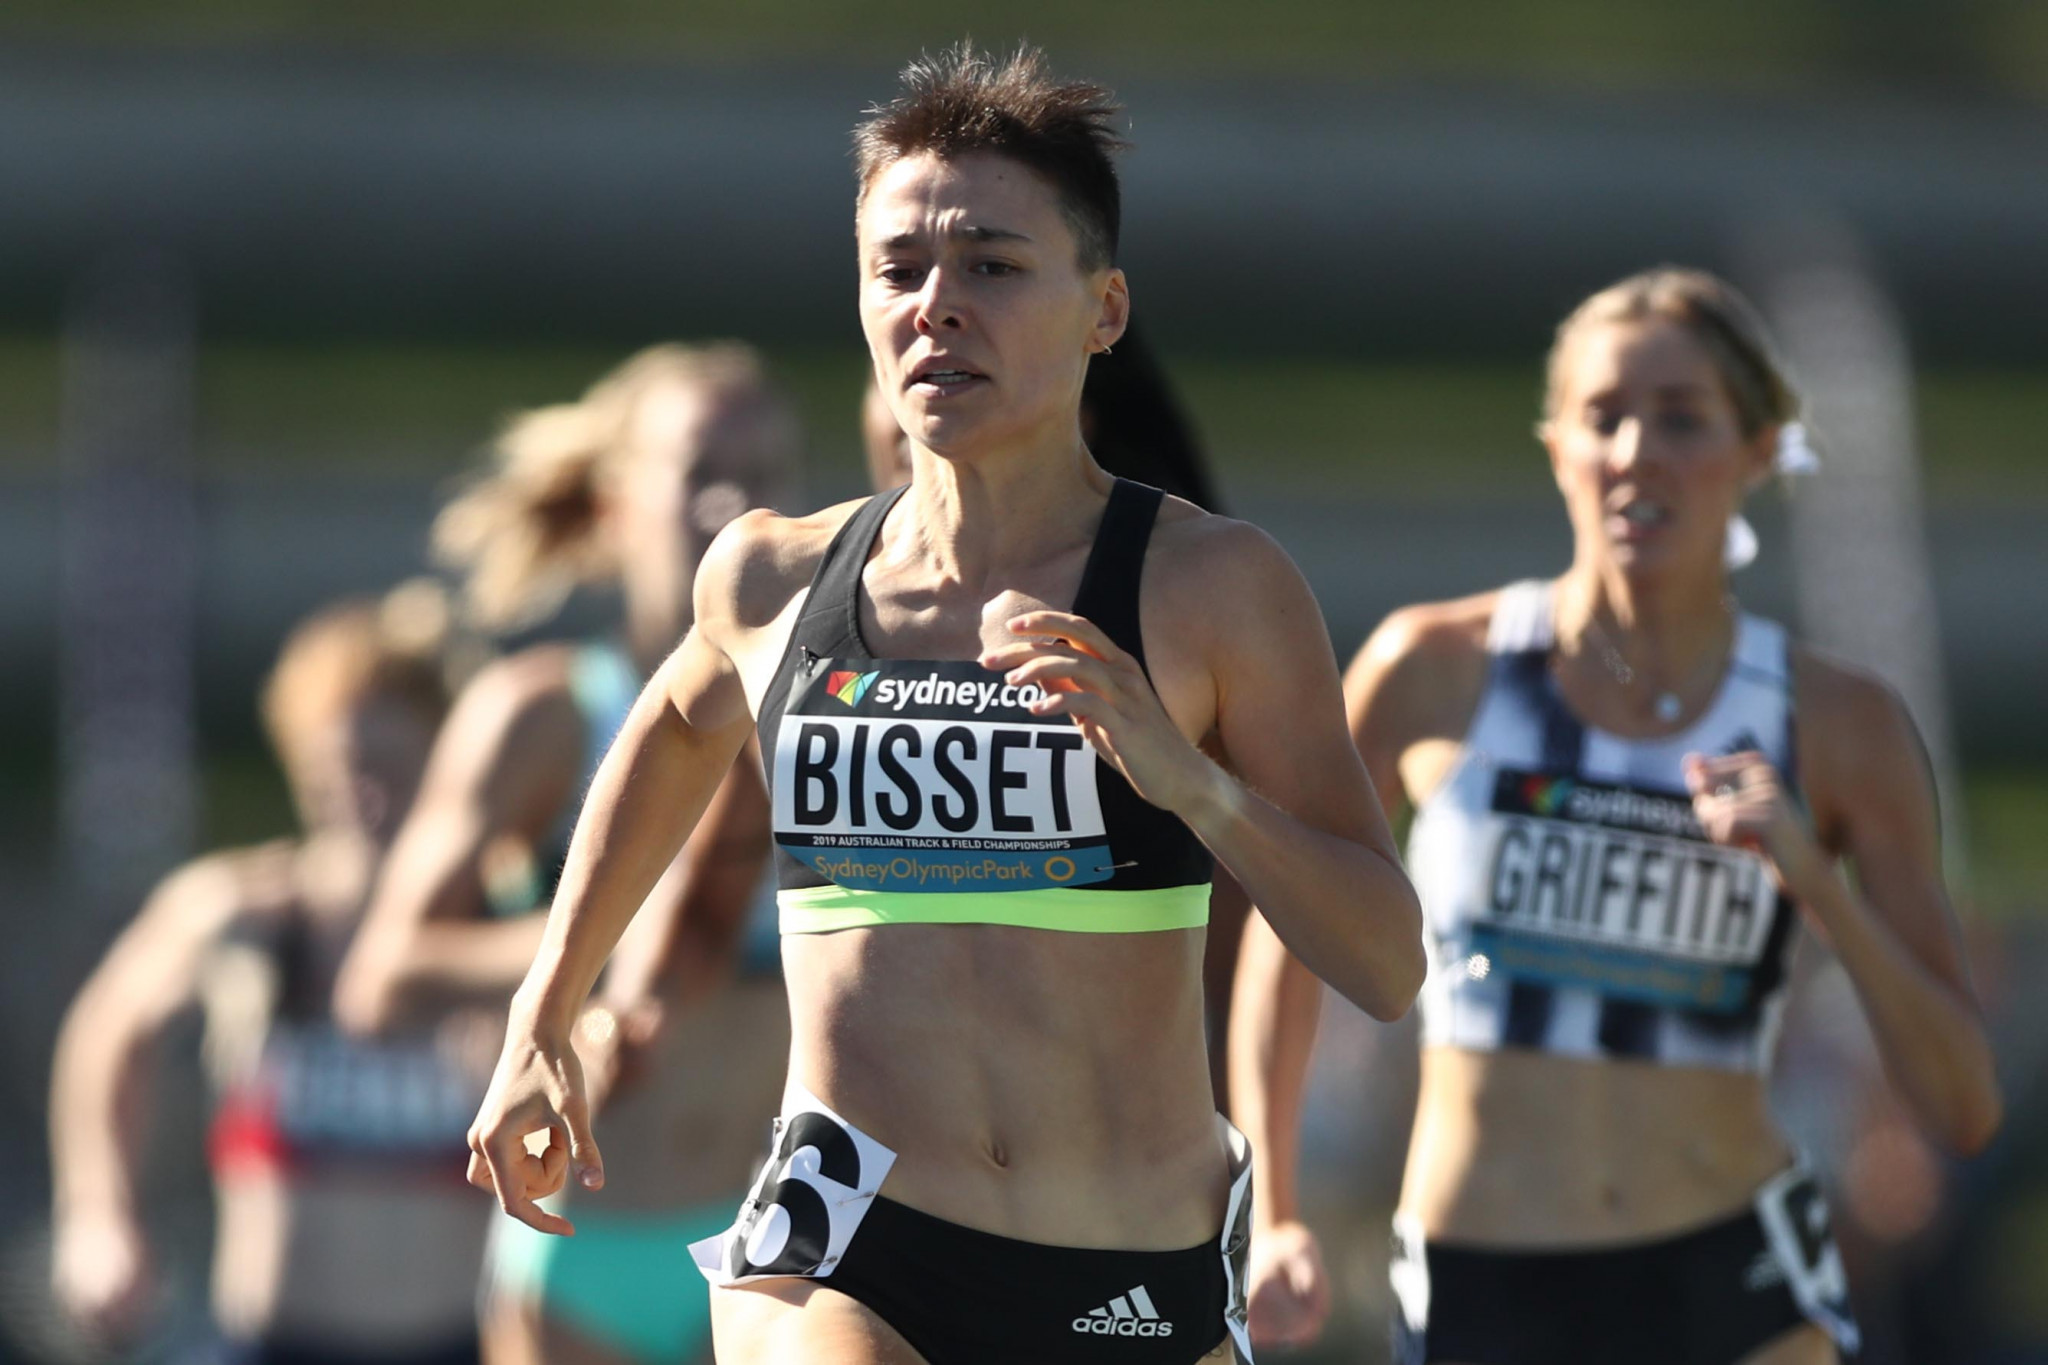 Rising star Bisset leads Australian hopes for Naples 2019